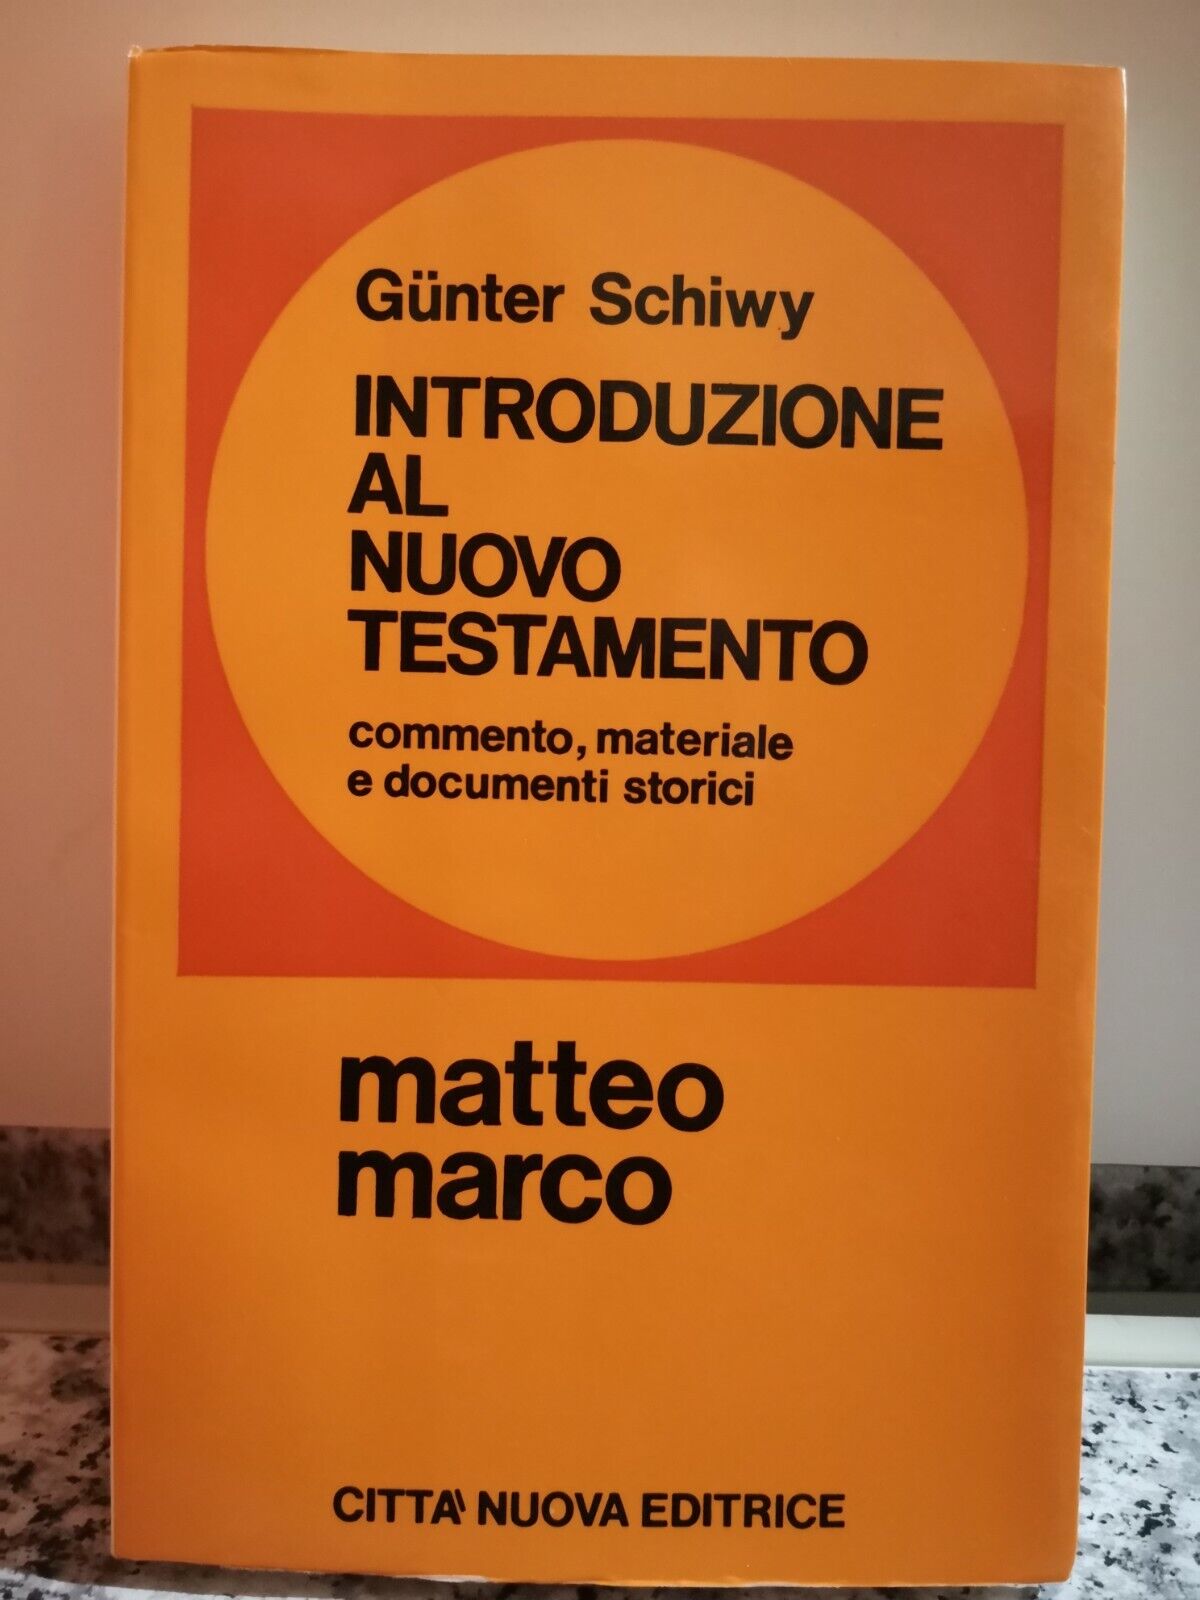  Introduzione al nuovo testamento Matteo e Marco di Gunter Schiwy,  1971, -F